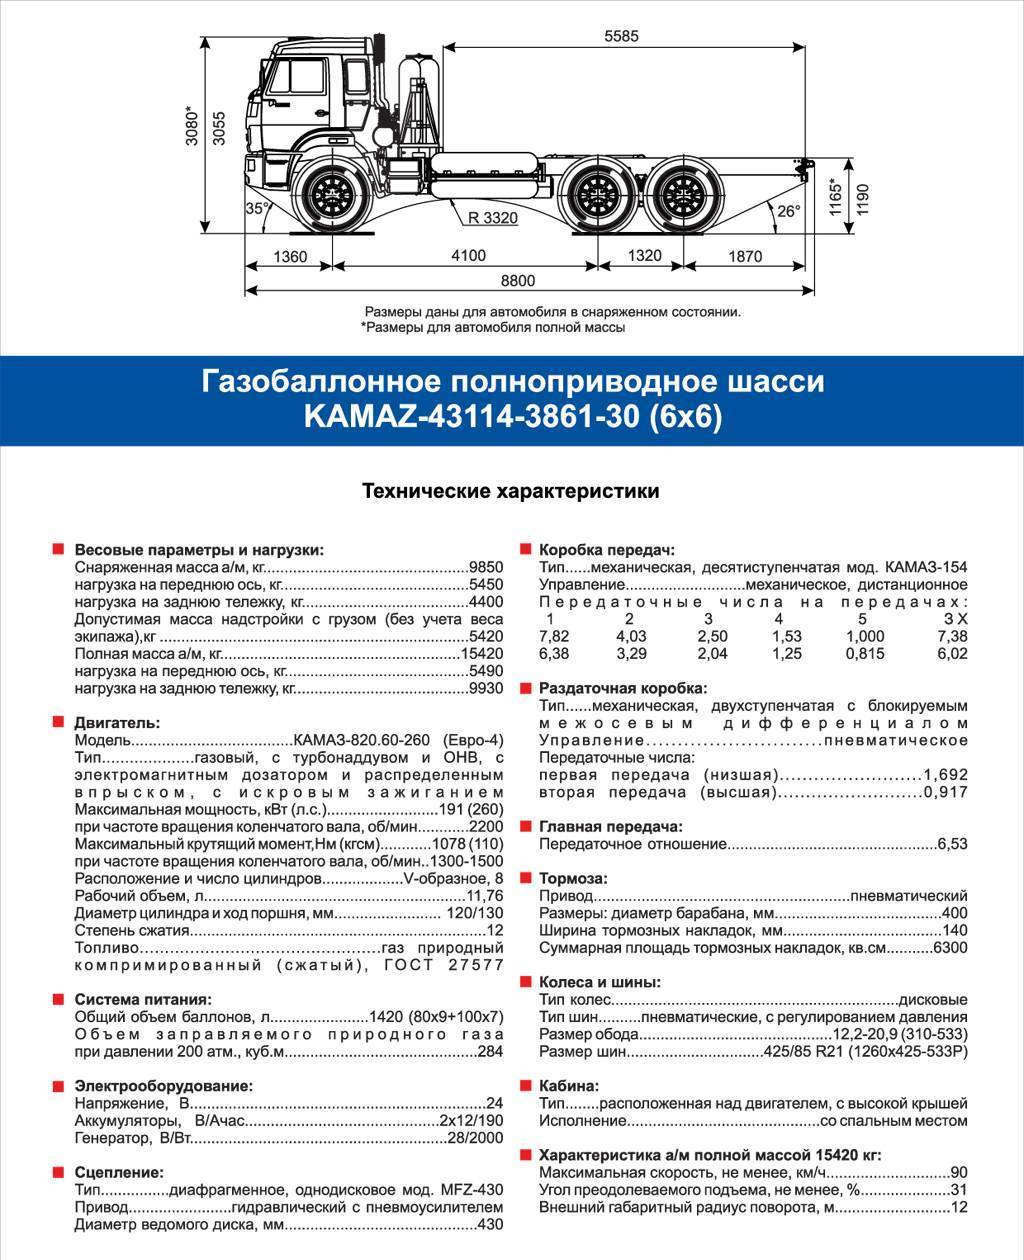 Камаз-53501. технические характеристики и описание. видеообзоры